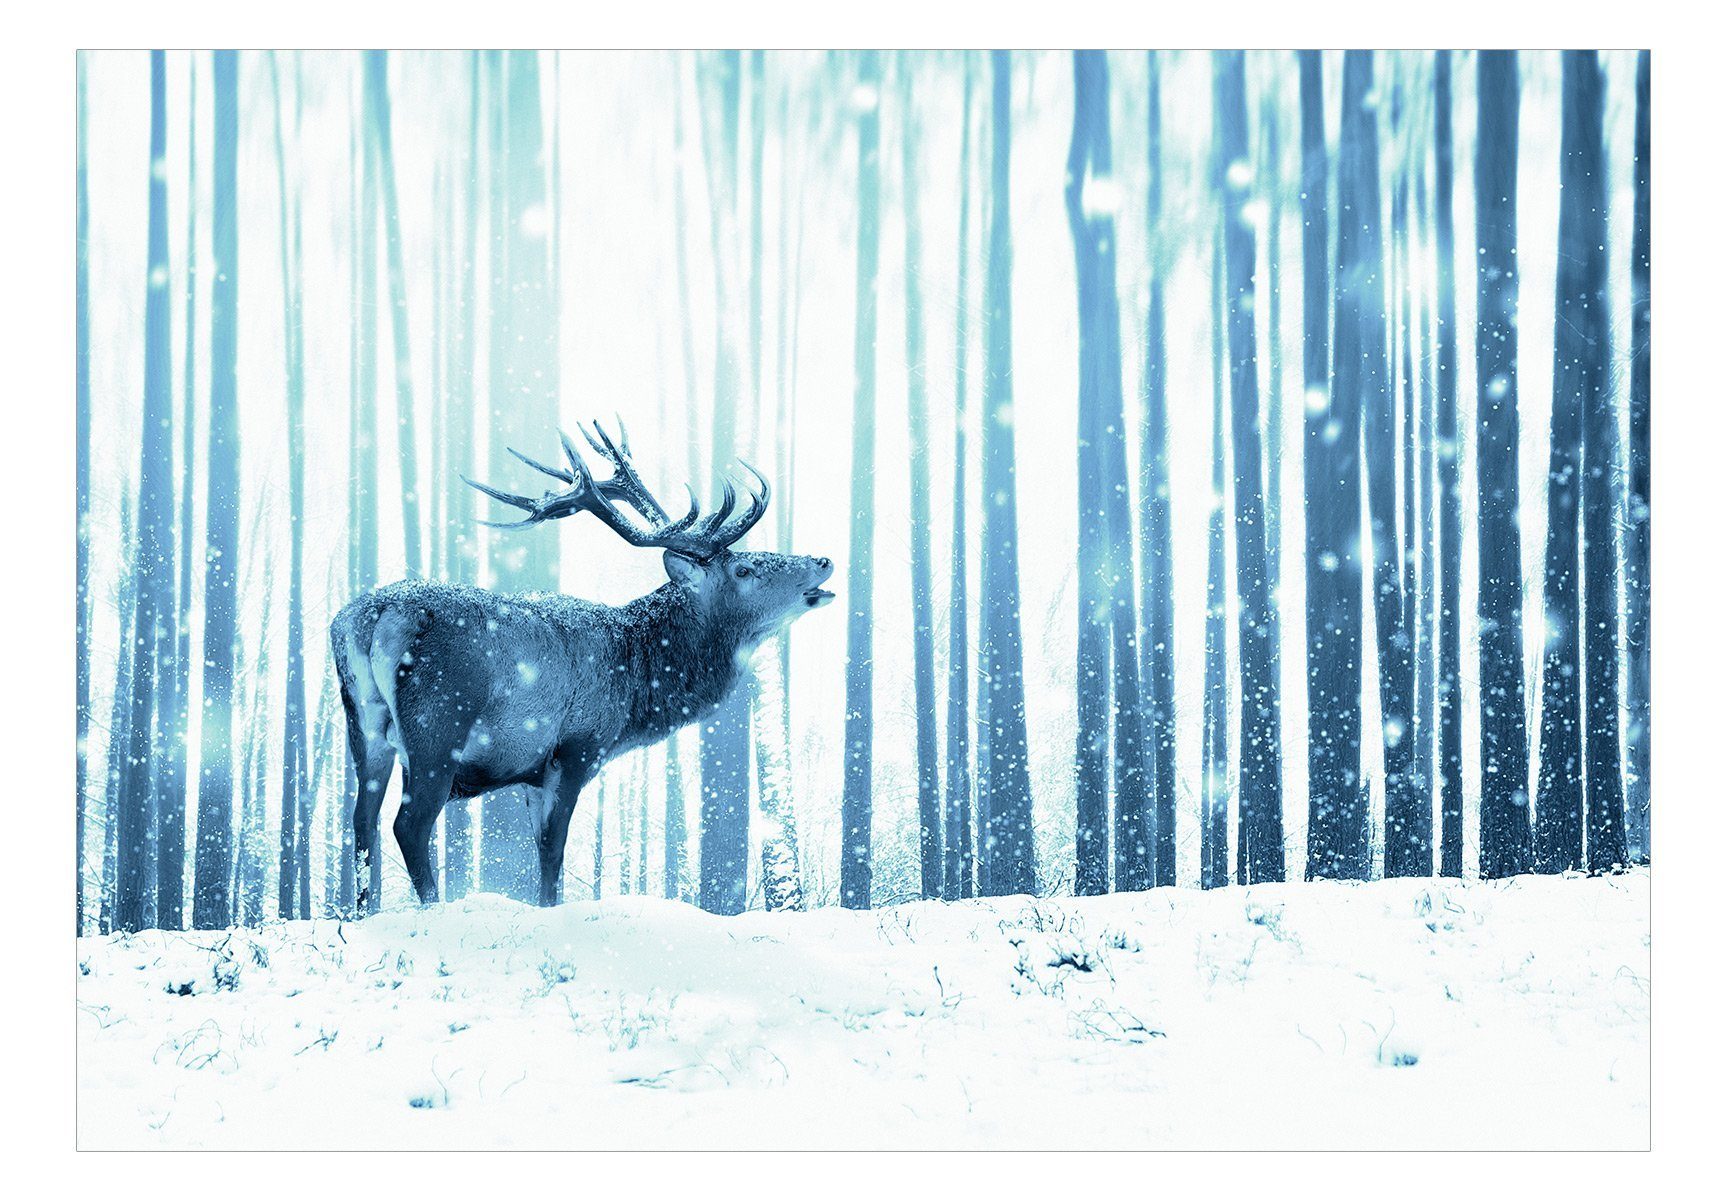 Vliestapete matt, in Deer Design KUNSTLOFT the lichtbeständige (Blue) Tapete 0.98x0.7 Snow m,